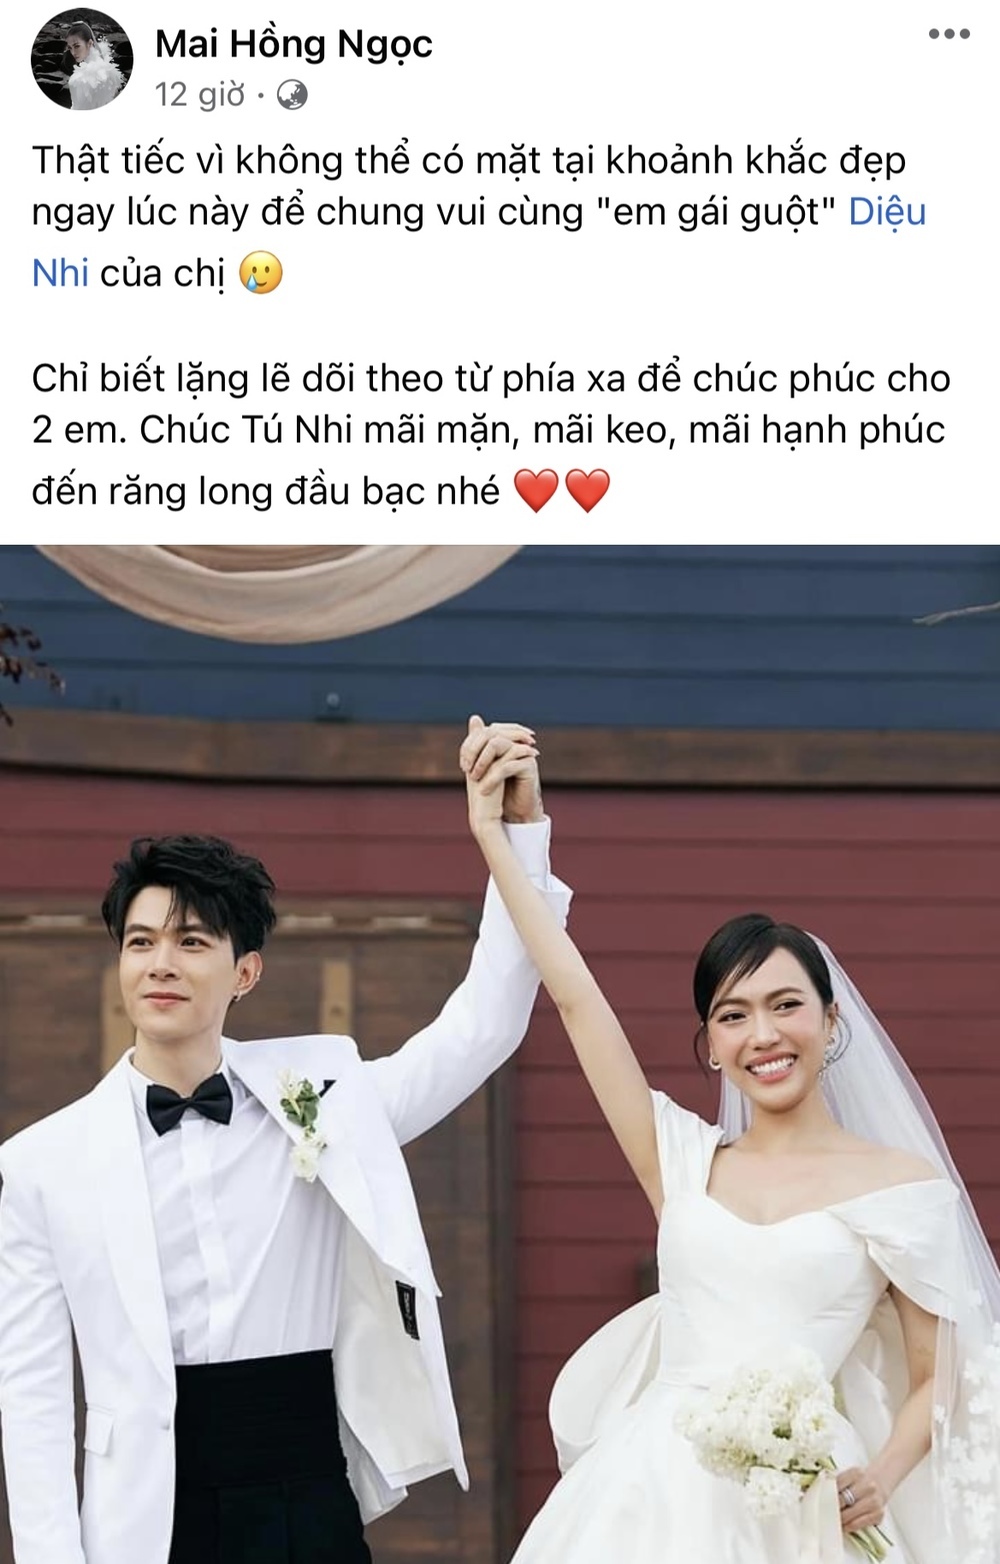  
Bà xã Ông Cao Thắng tiếc nuối, thông báo không thể tham dự đám cưới Diệu Nhi - Anh Tú. (Ảnh: Chụp màn hình Facebook Mai Hồng Ngọc)